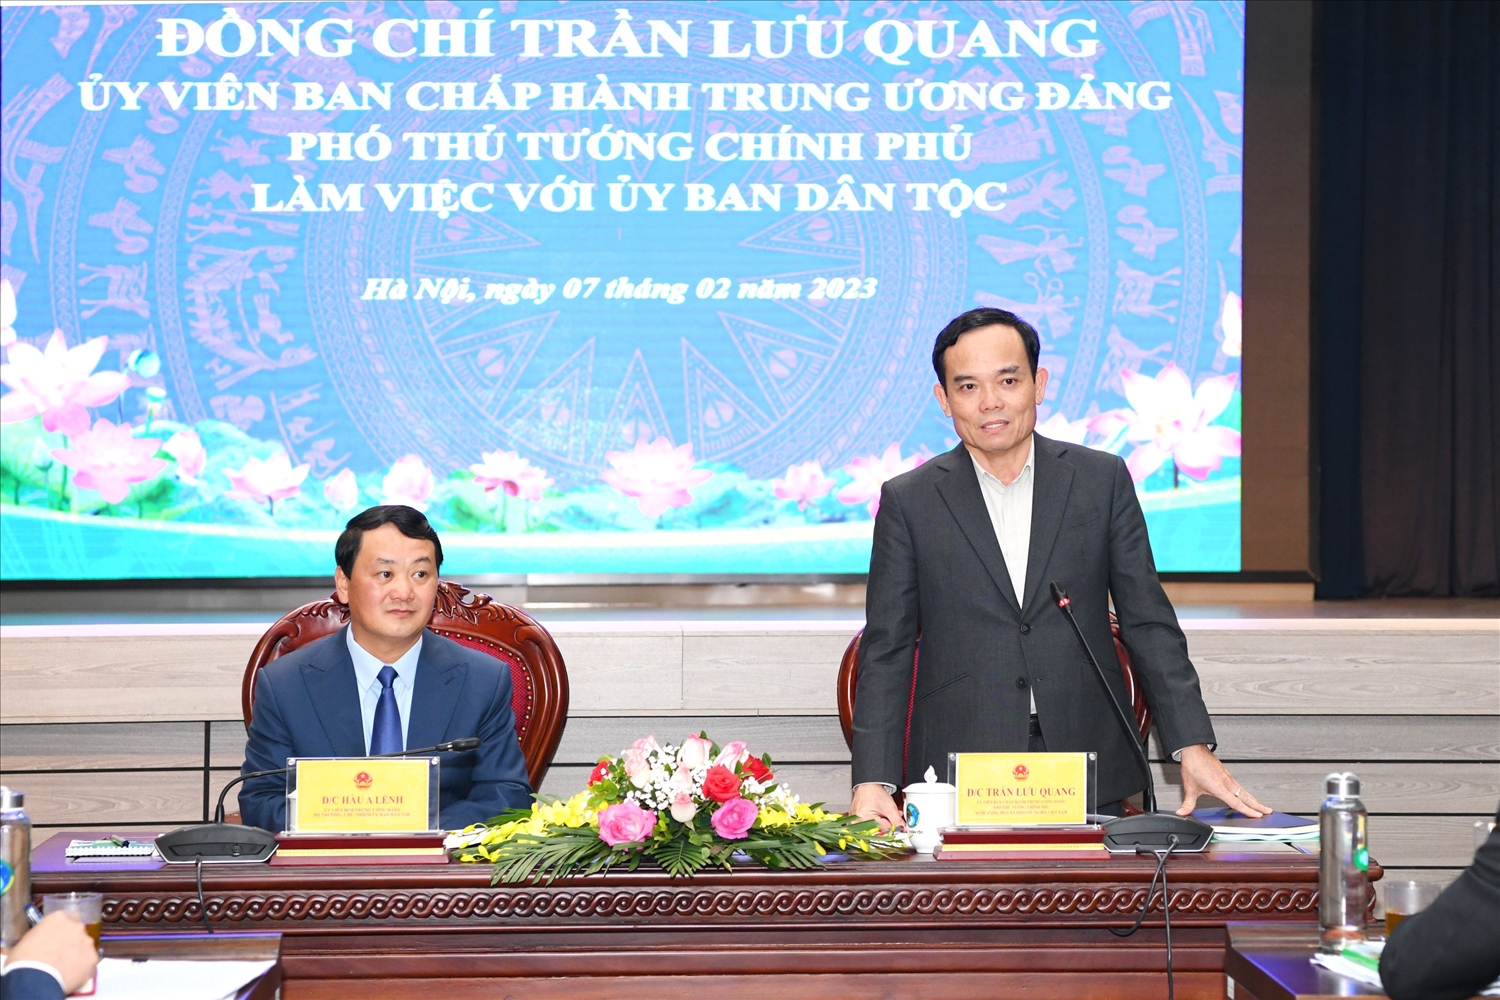 Phó Thủ tướng Chính phủ Trần Lưu Quang phát biểu tại buổi làm việc